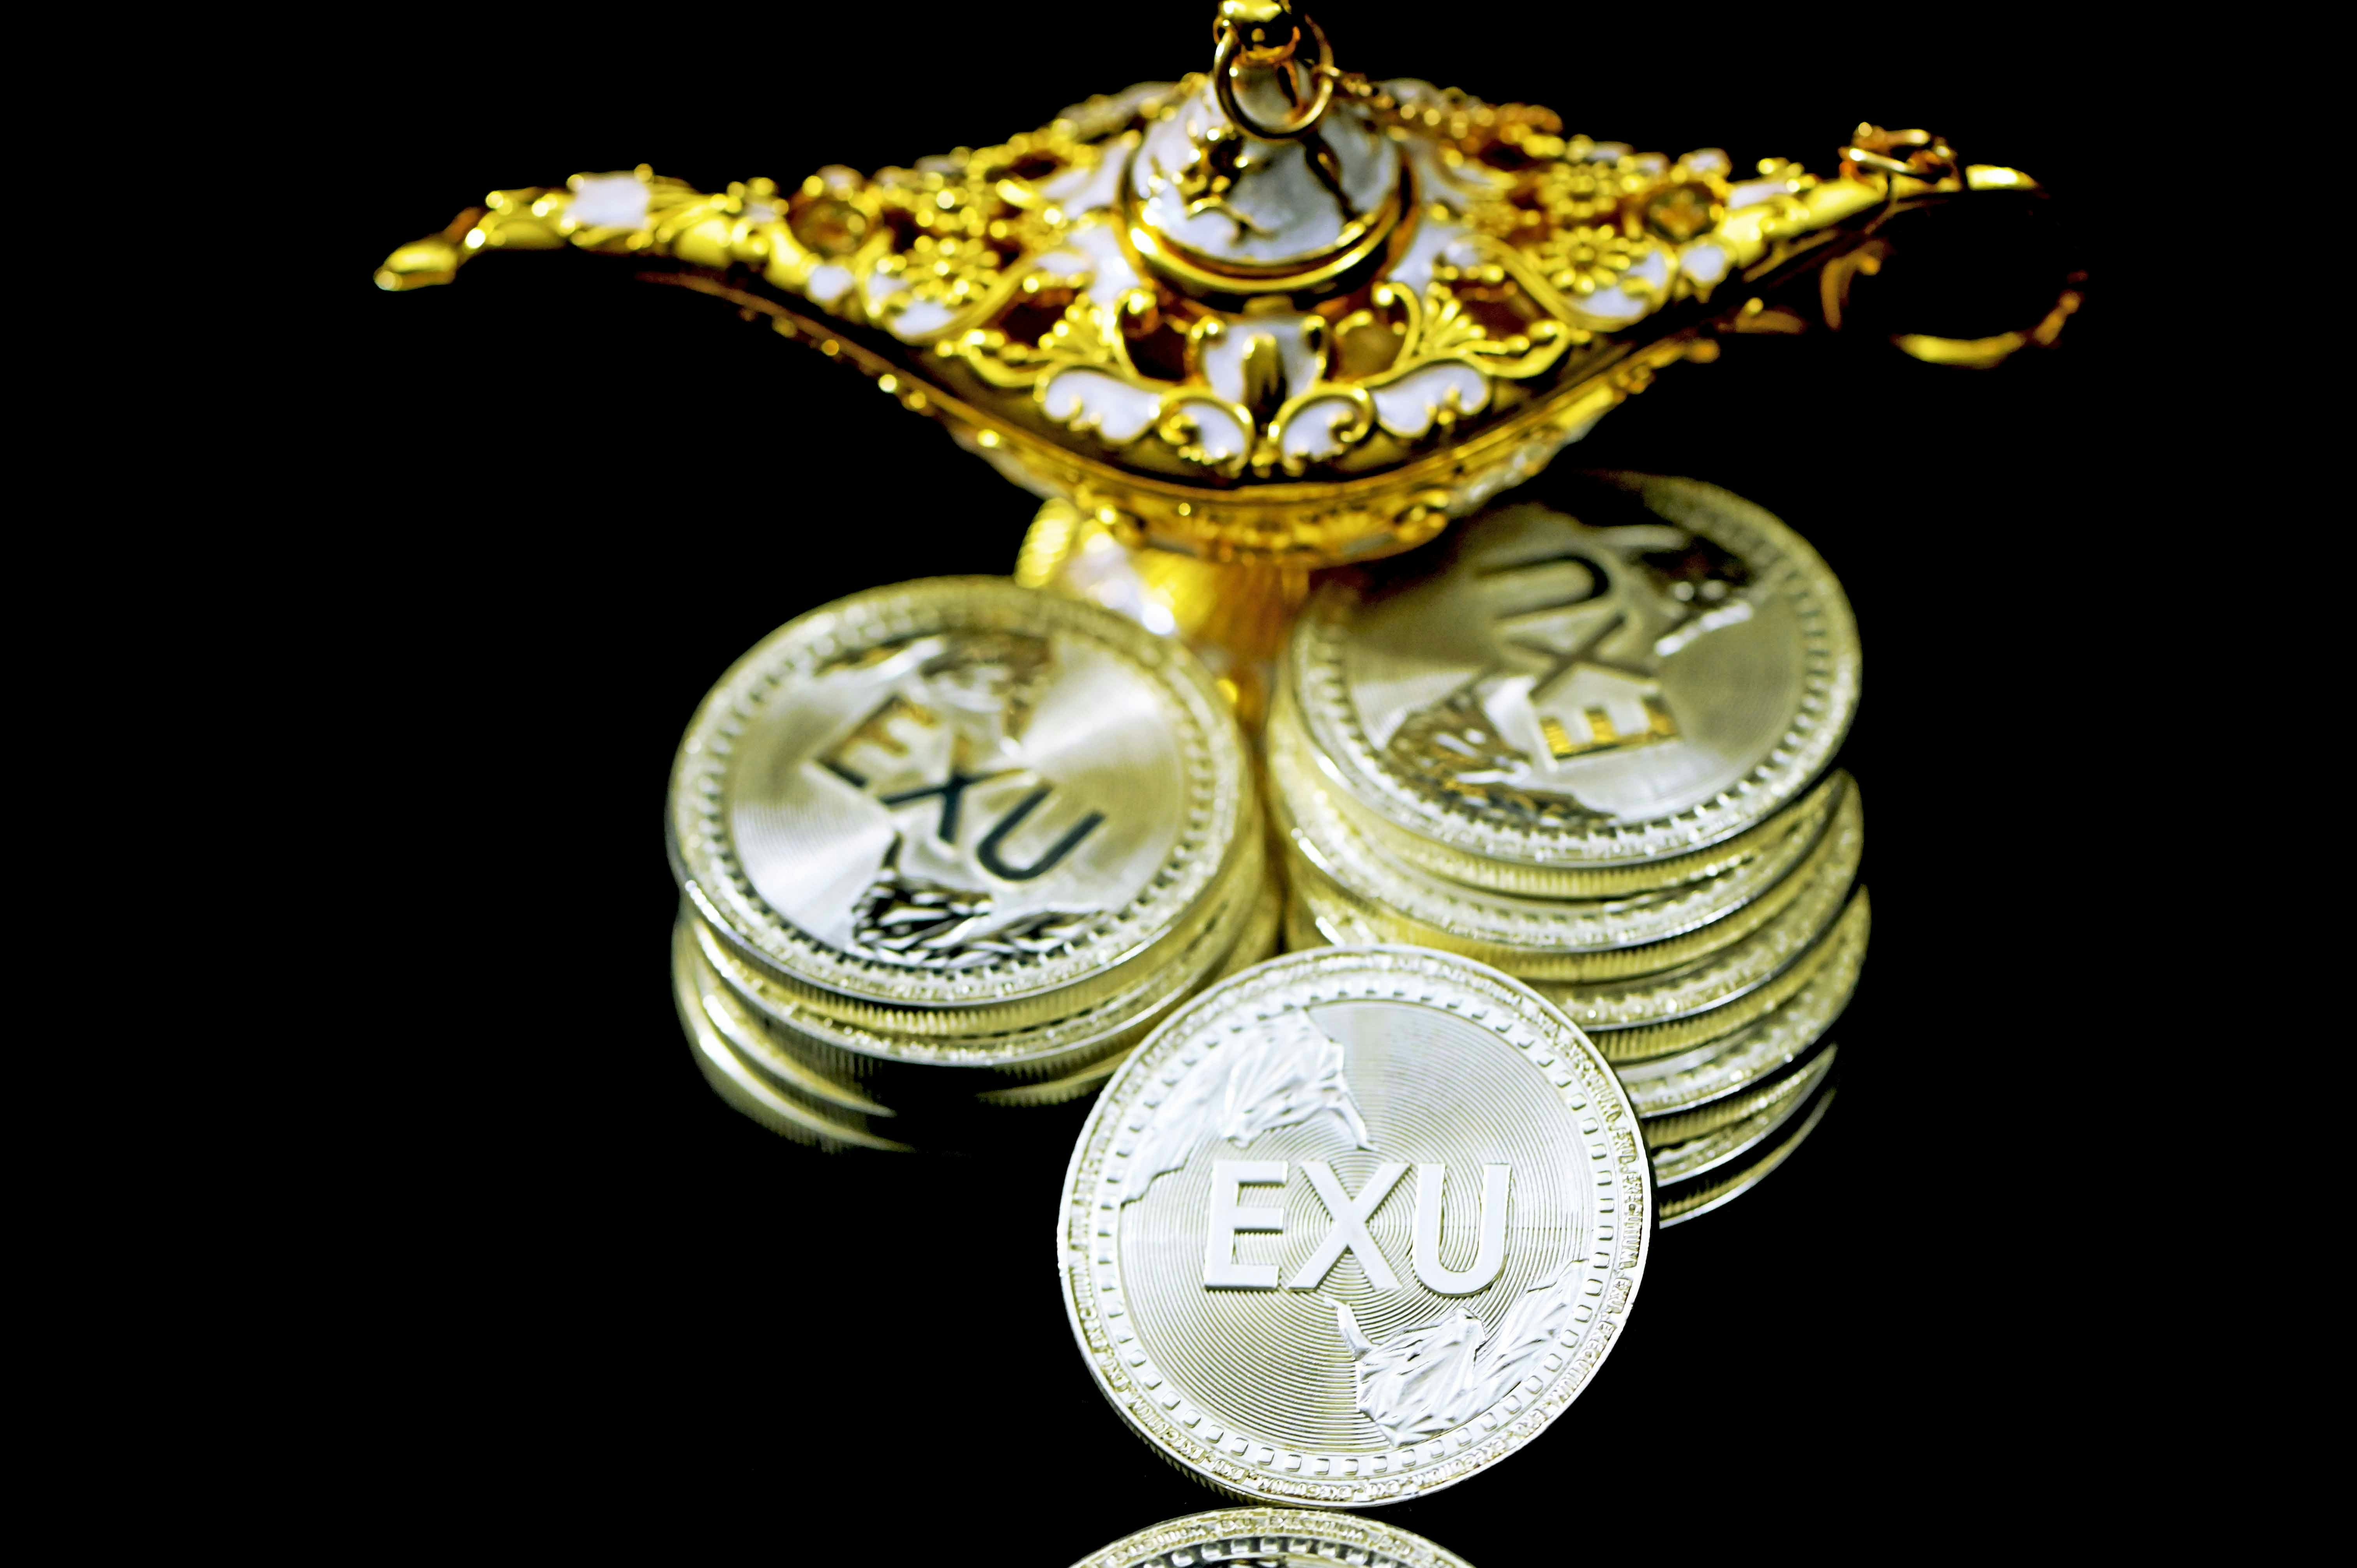 Executium coins under a magic lamp